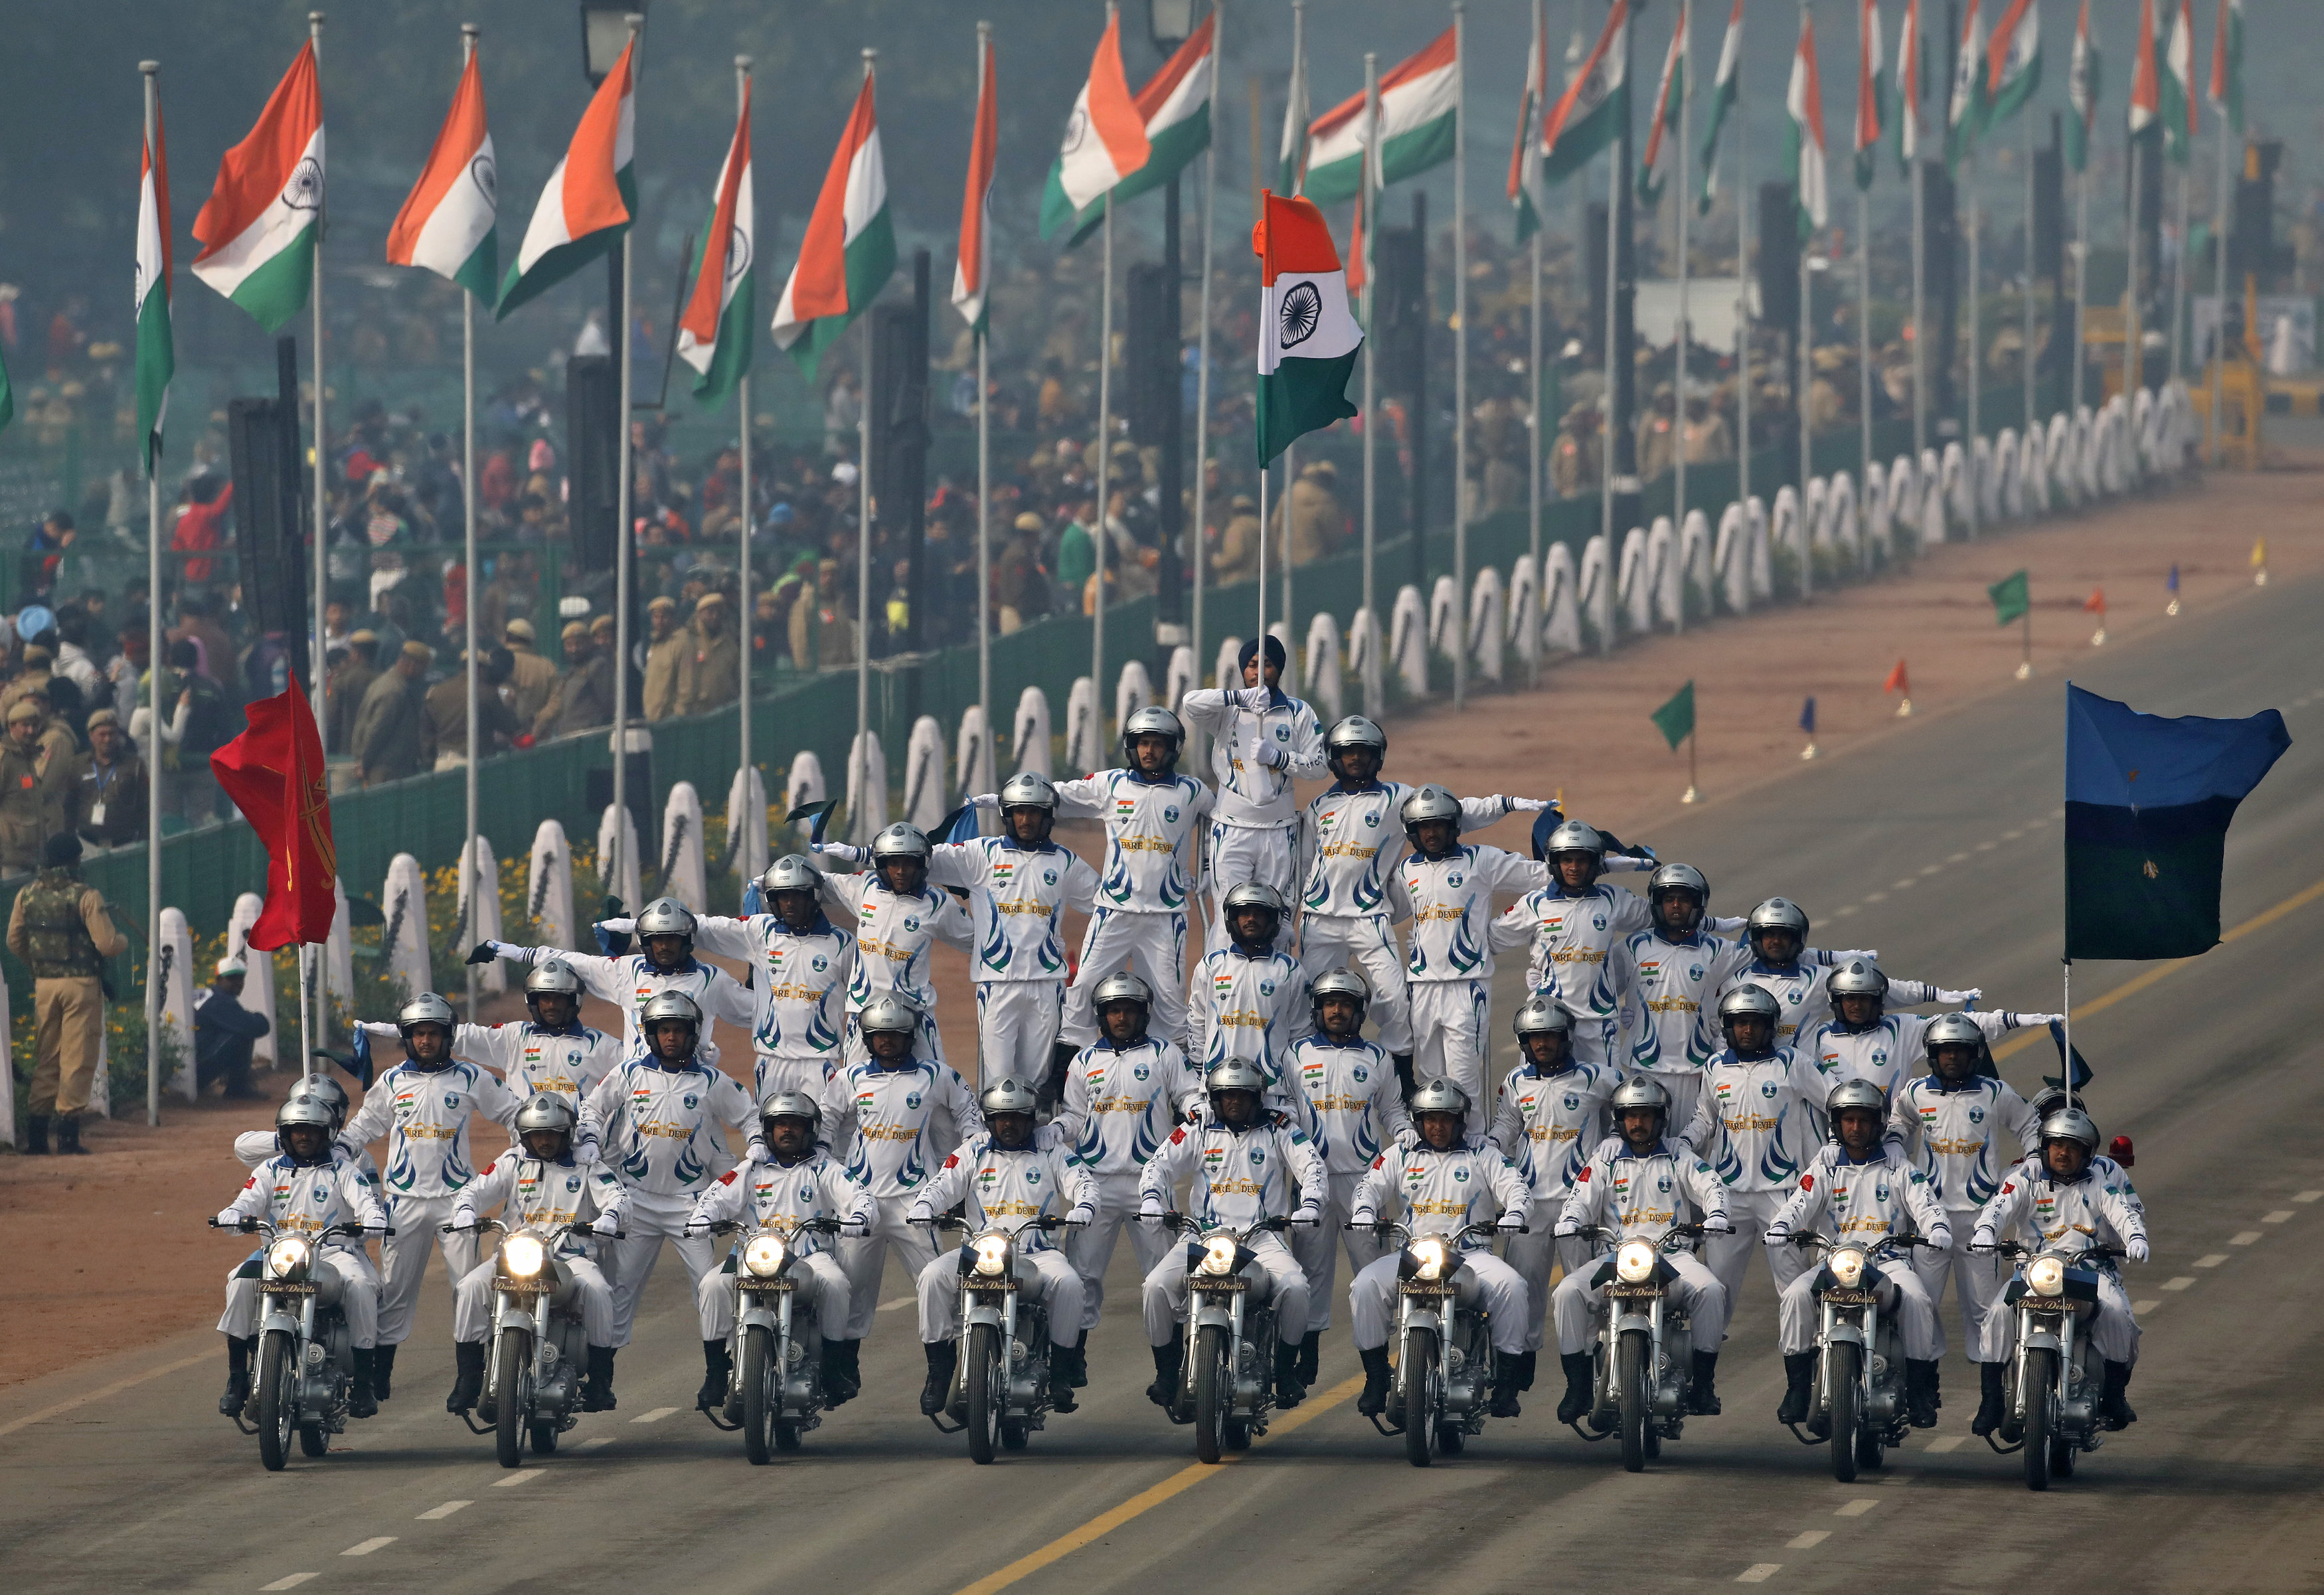 مجموعة من الضباط ينظمون عرضا يرفعون خلاله علم الهند